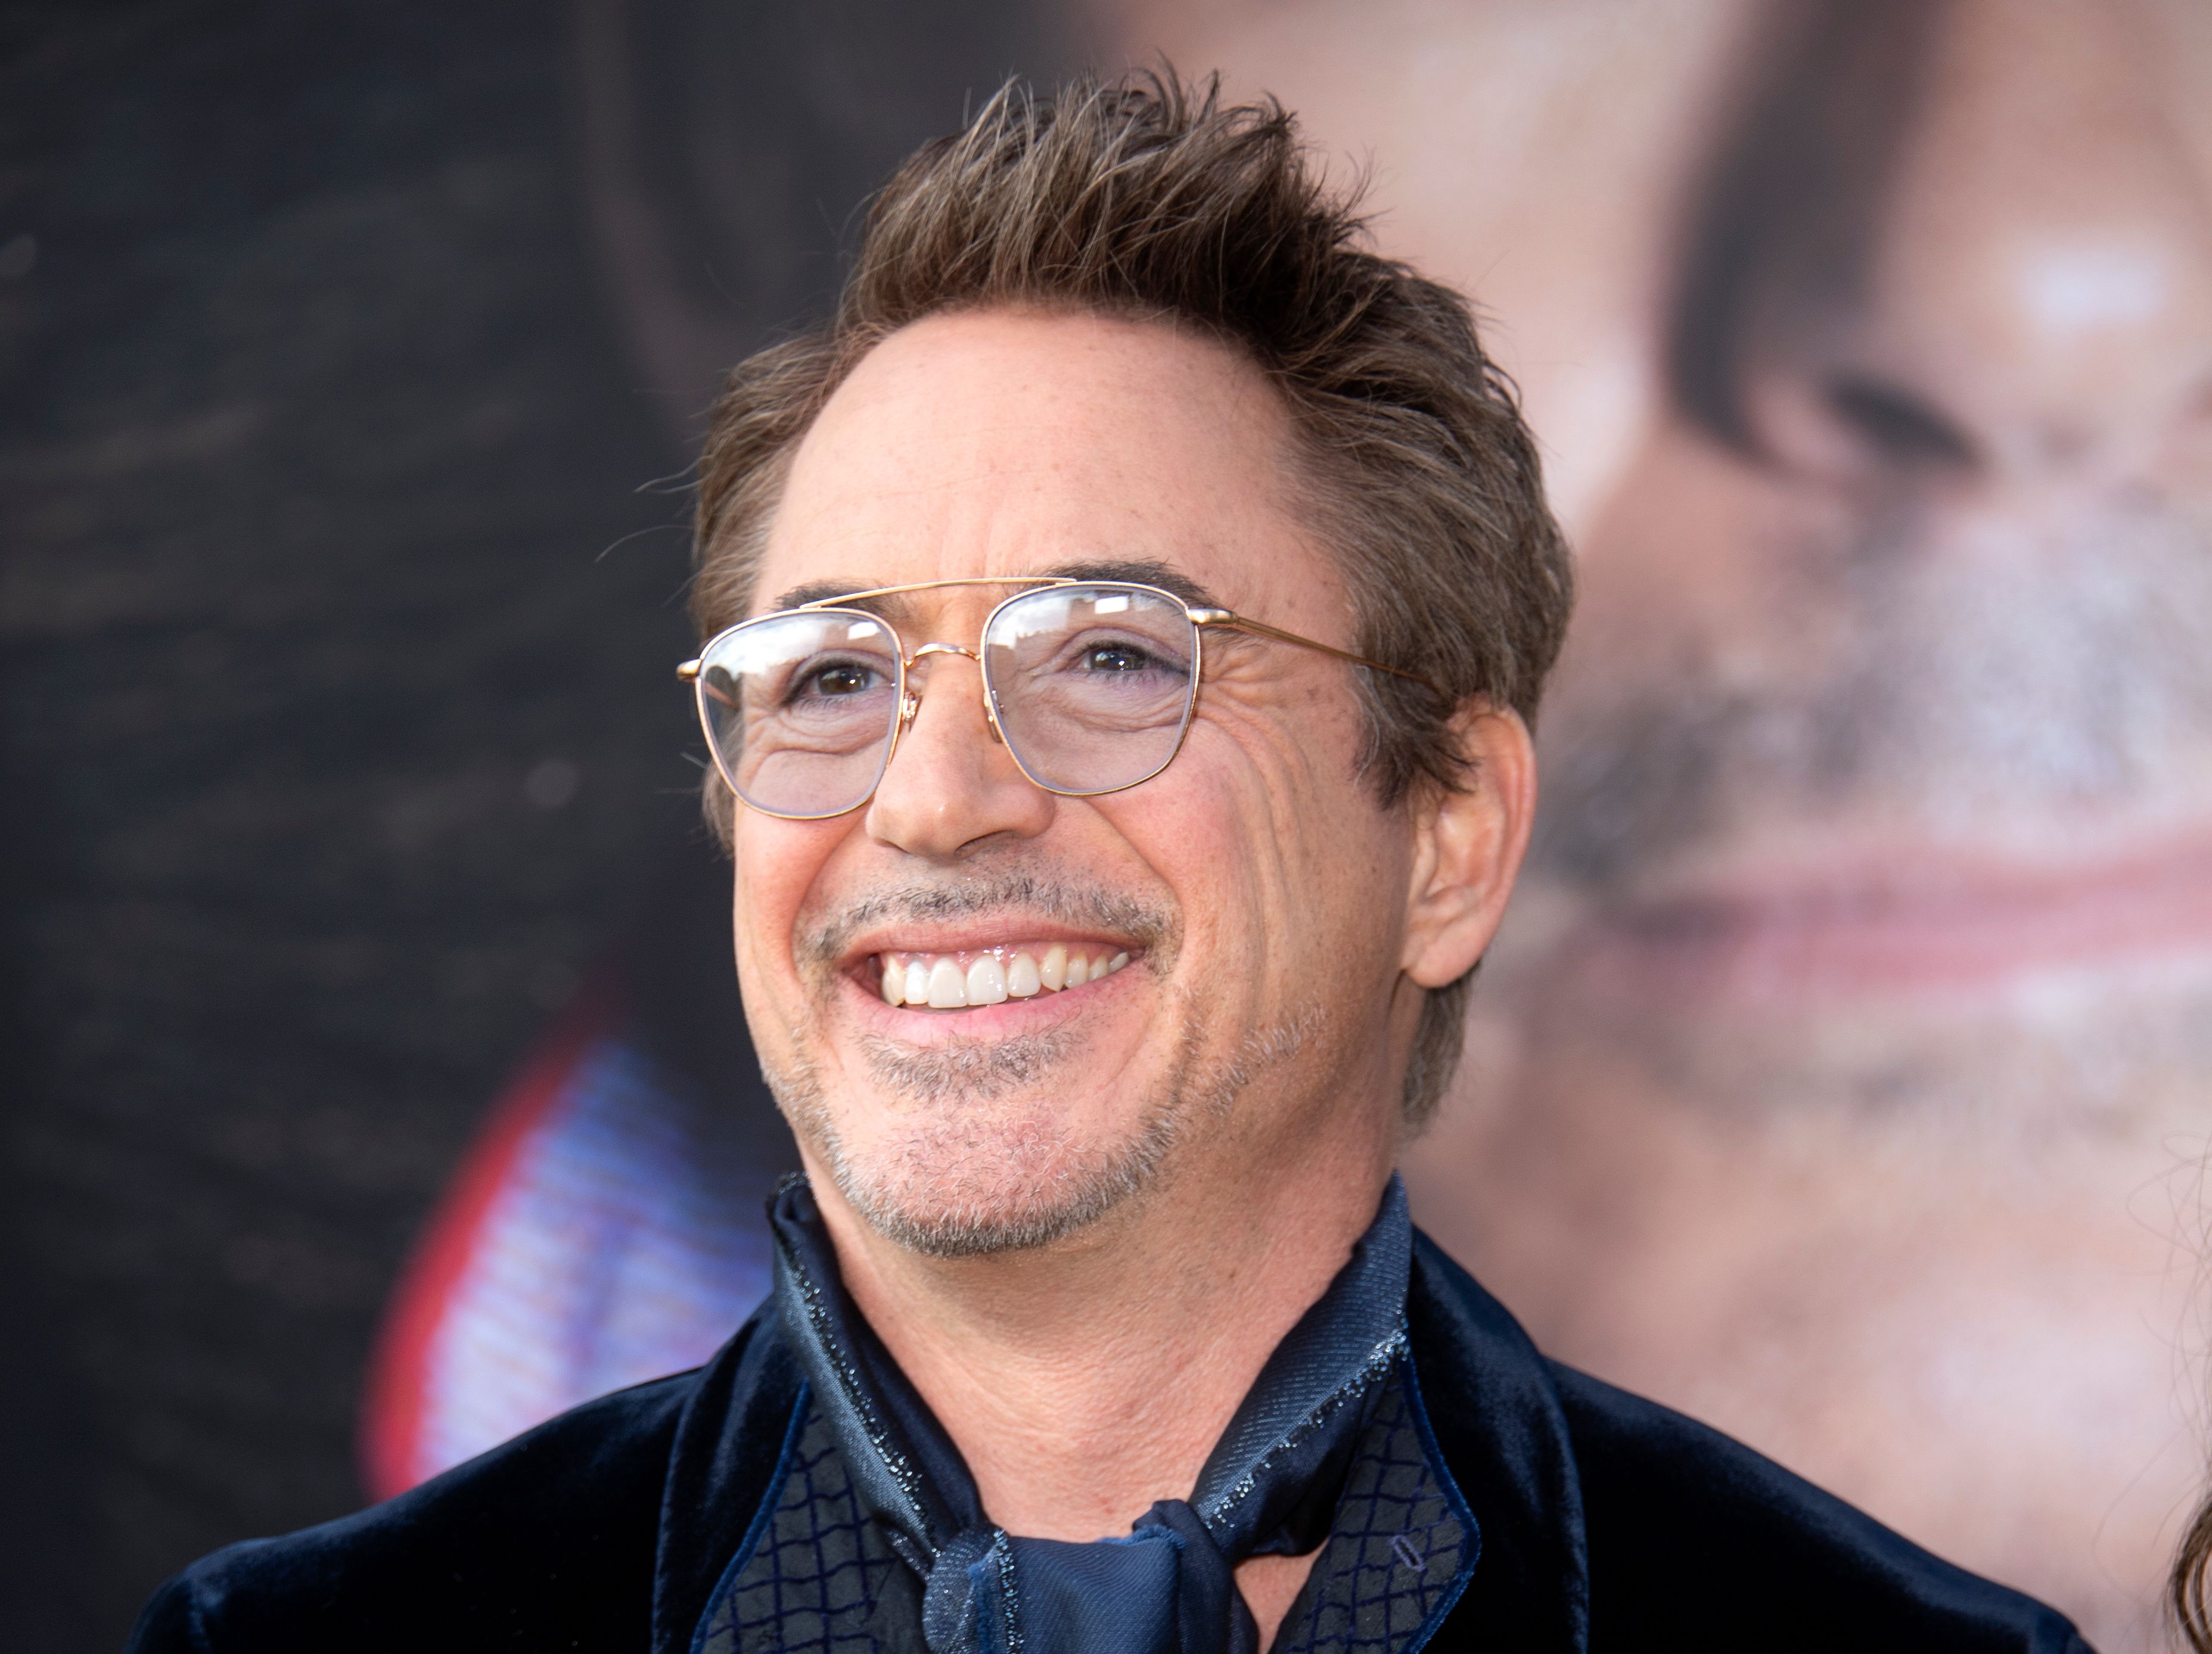 Robert Downey Jr, durante el estreno de "Dolittle" a principios de año. (Foto Prensa Libre: Hemeroteca PL)